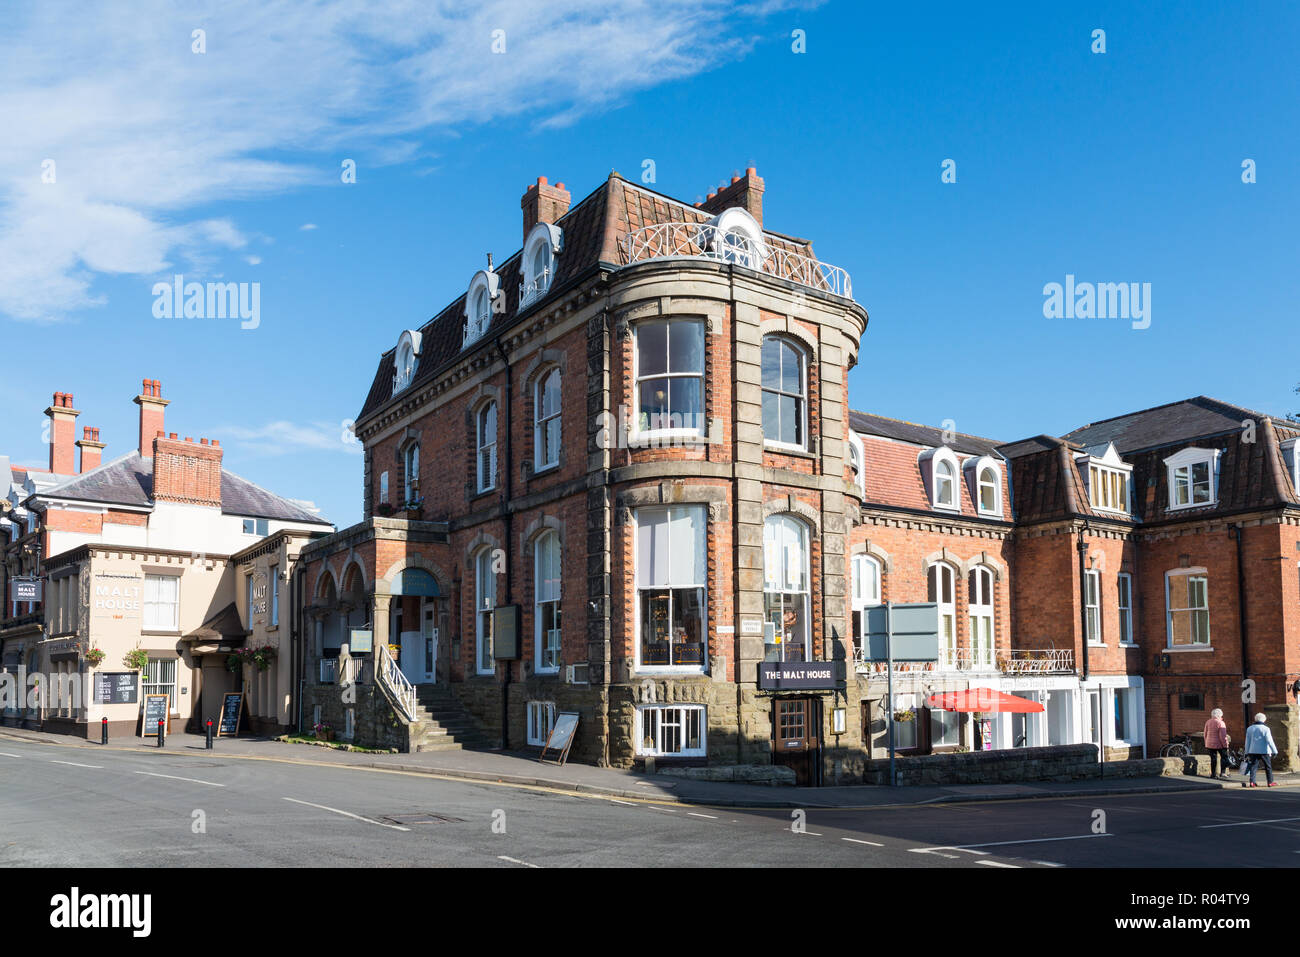 Vieux cuivres Malt House est le plus vieux pub dans Church Stretton, Shropshire Banque D'Images